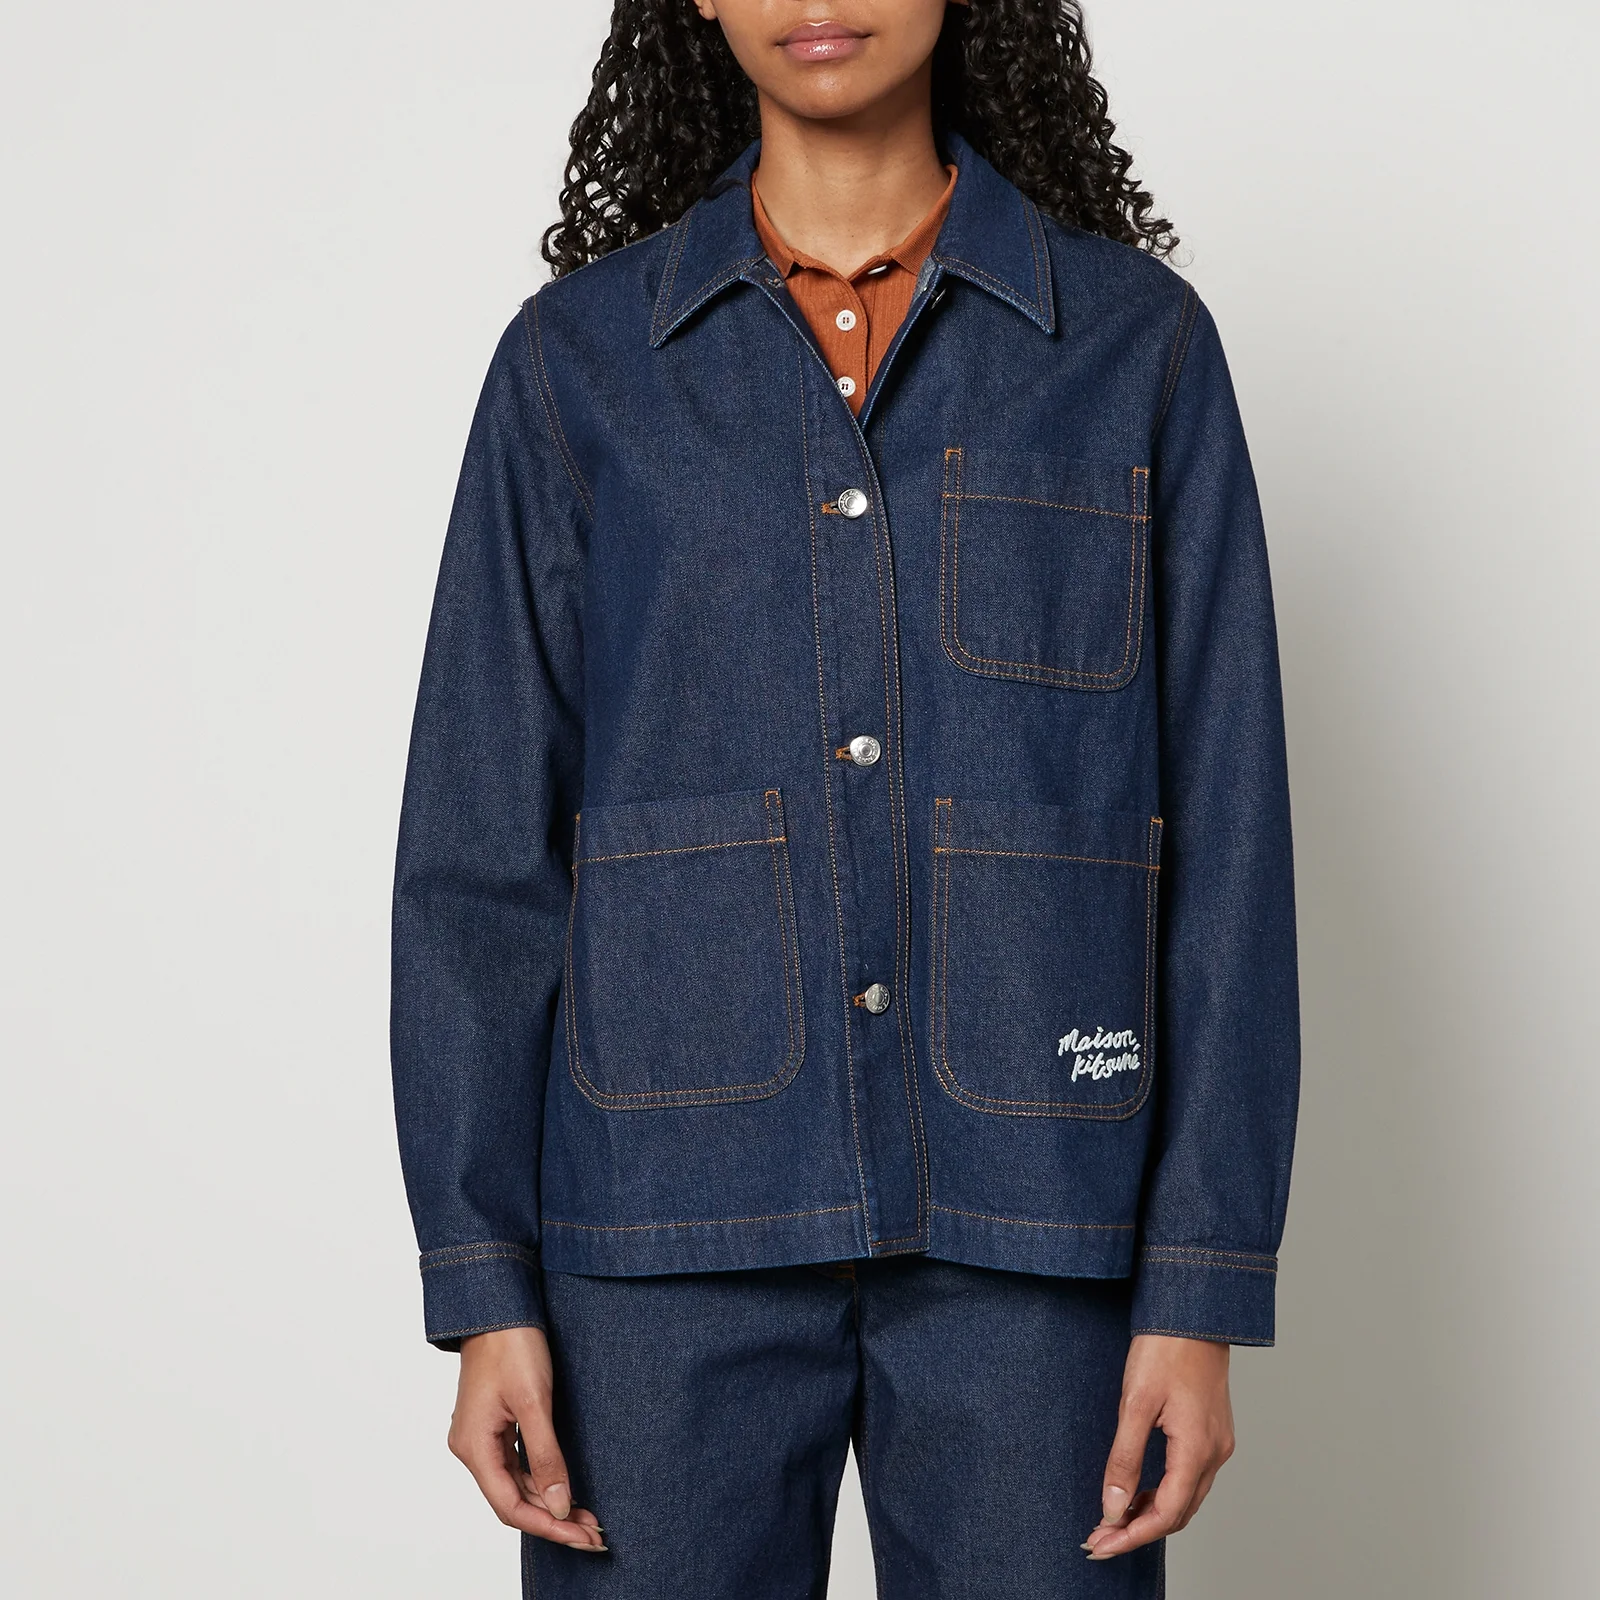 Maison Kitsuné Workwear Front Patch Pockets Denim Jacket - XS Image 1